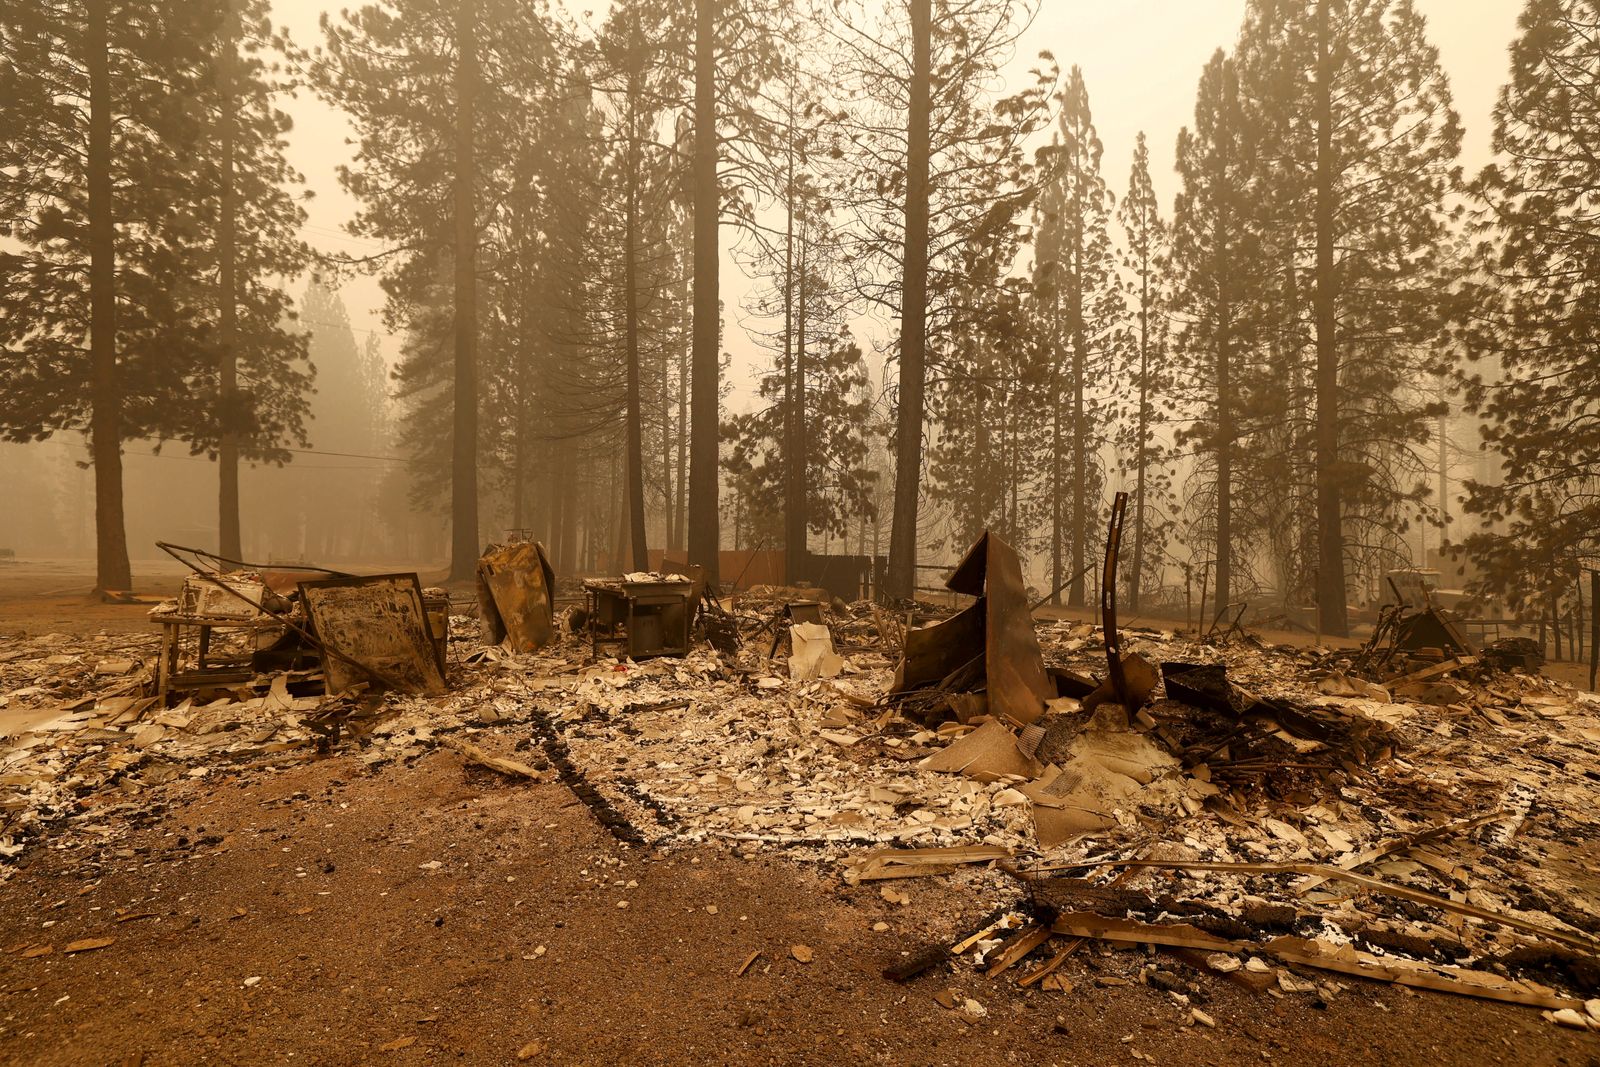 بقايا منزل دمرته النيران بالقرب من بلدة كانيوندام في كاليفورنيا 7 أغسطس 2021 - REUTERS